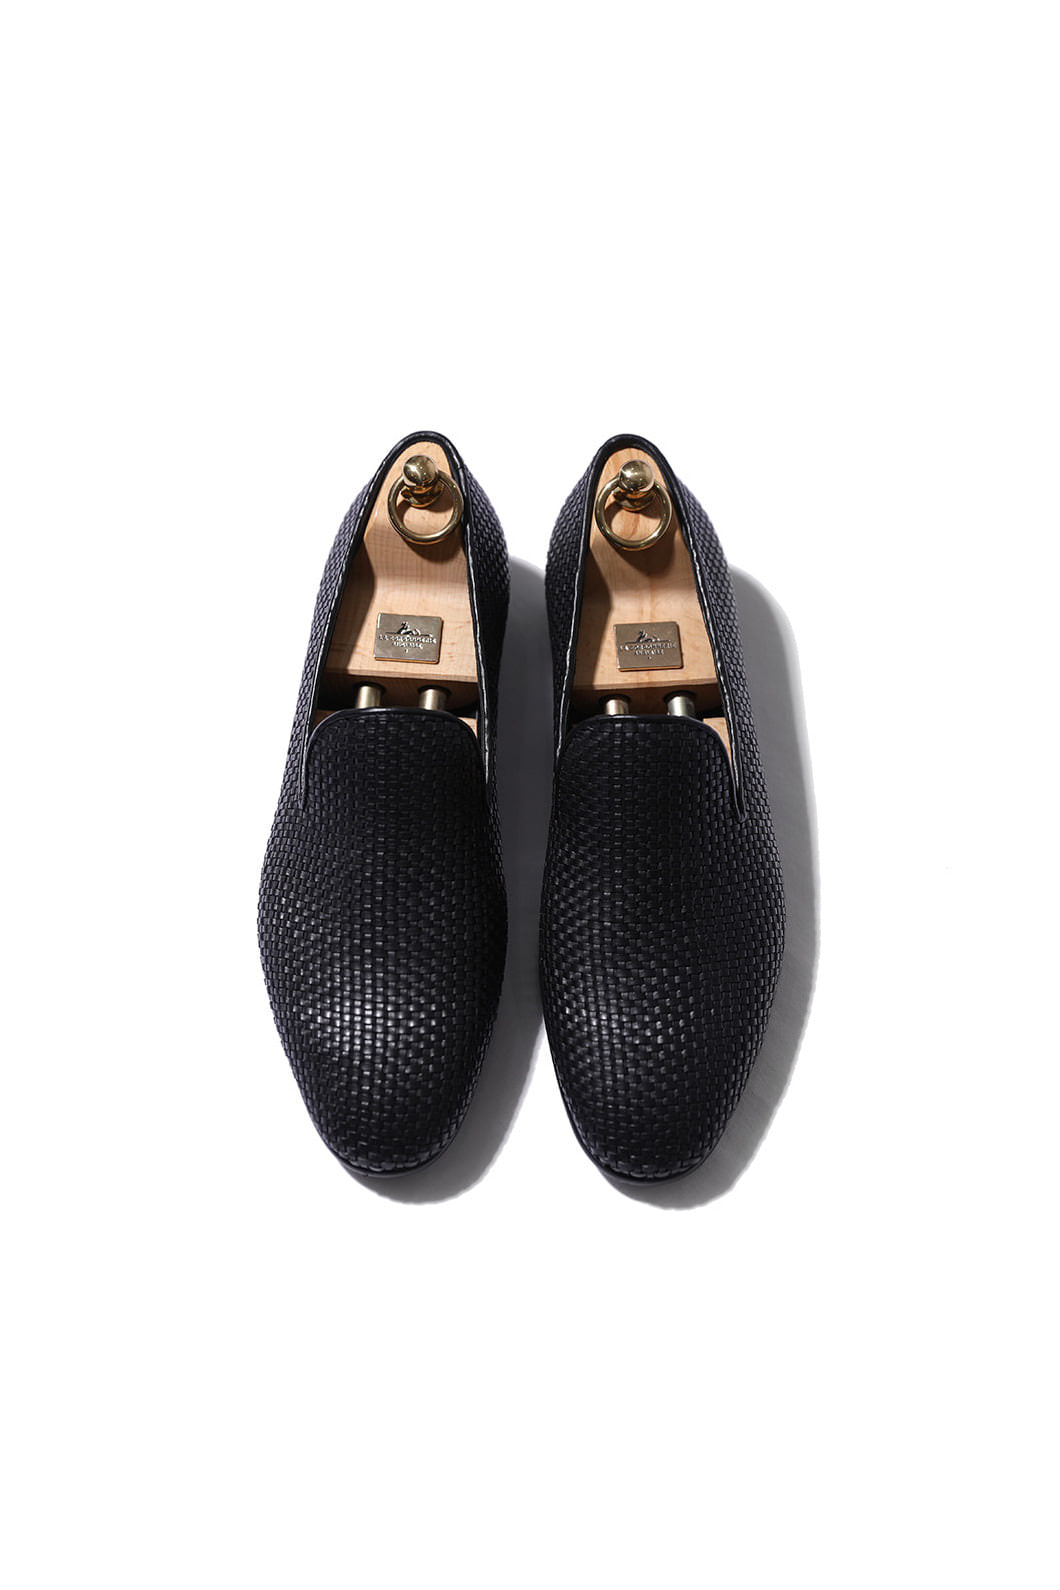 Take438 artisan intrecciato loafer/black